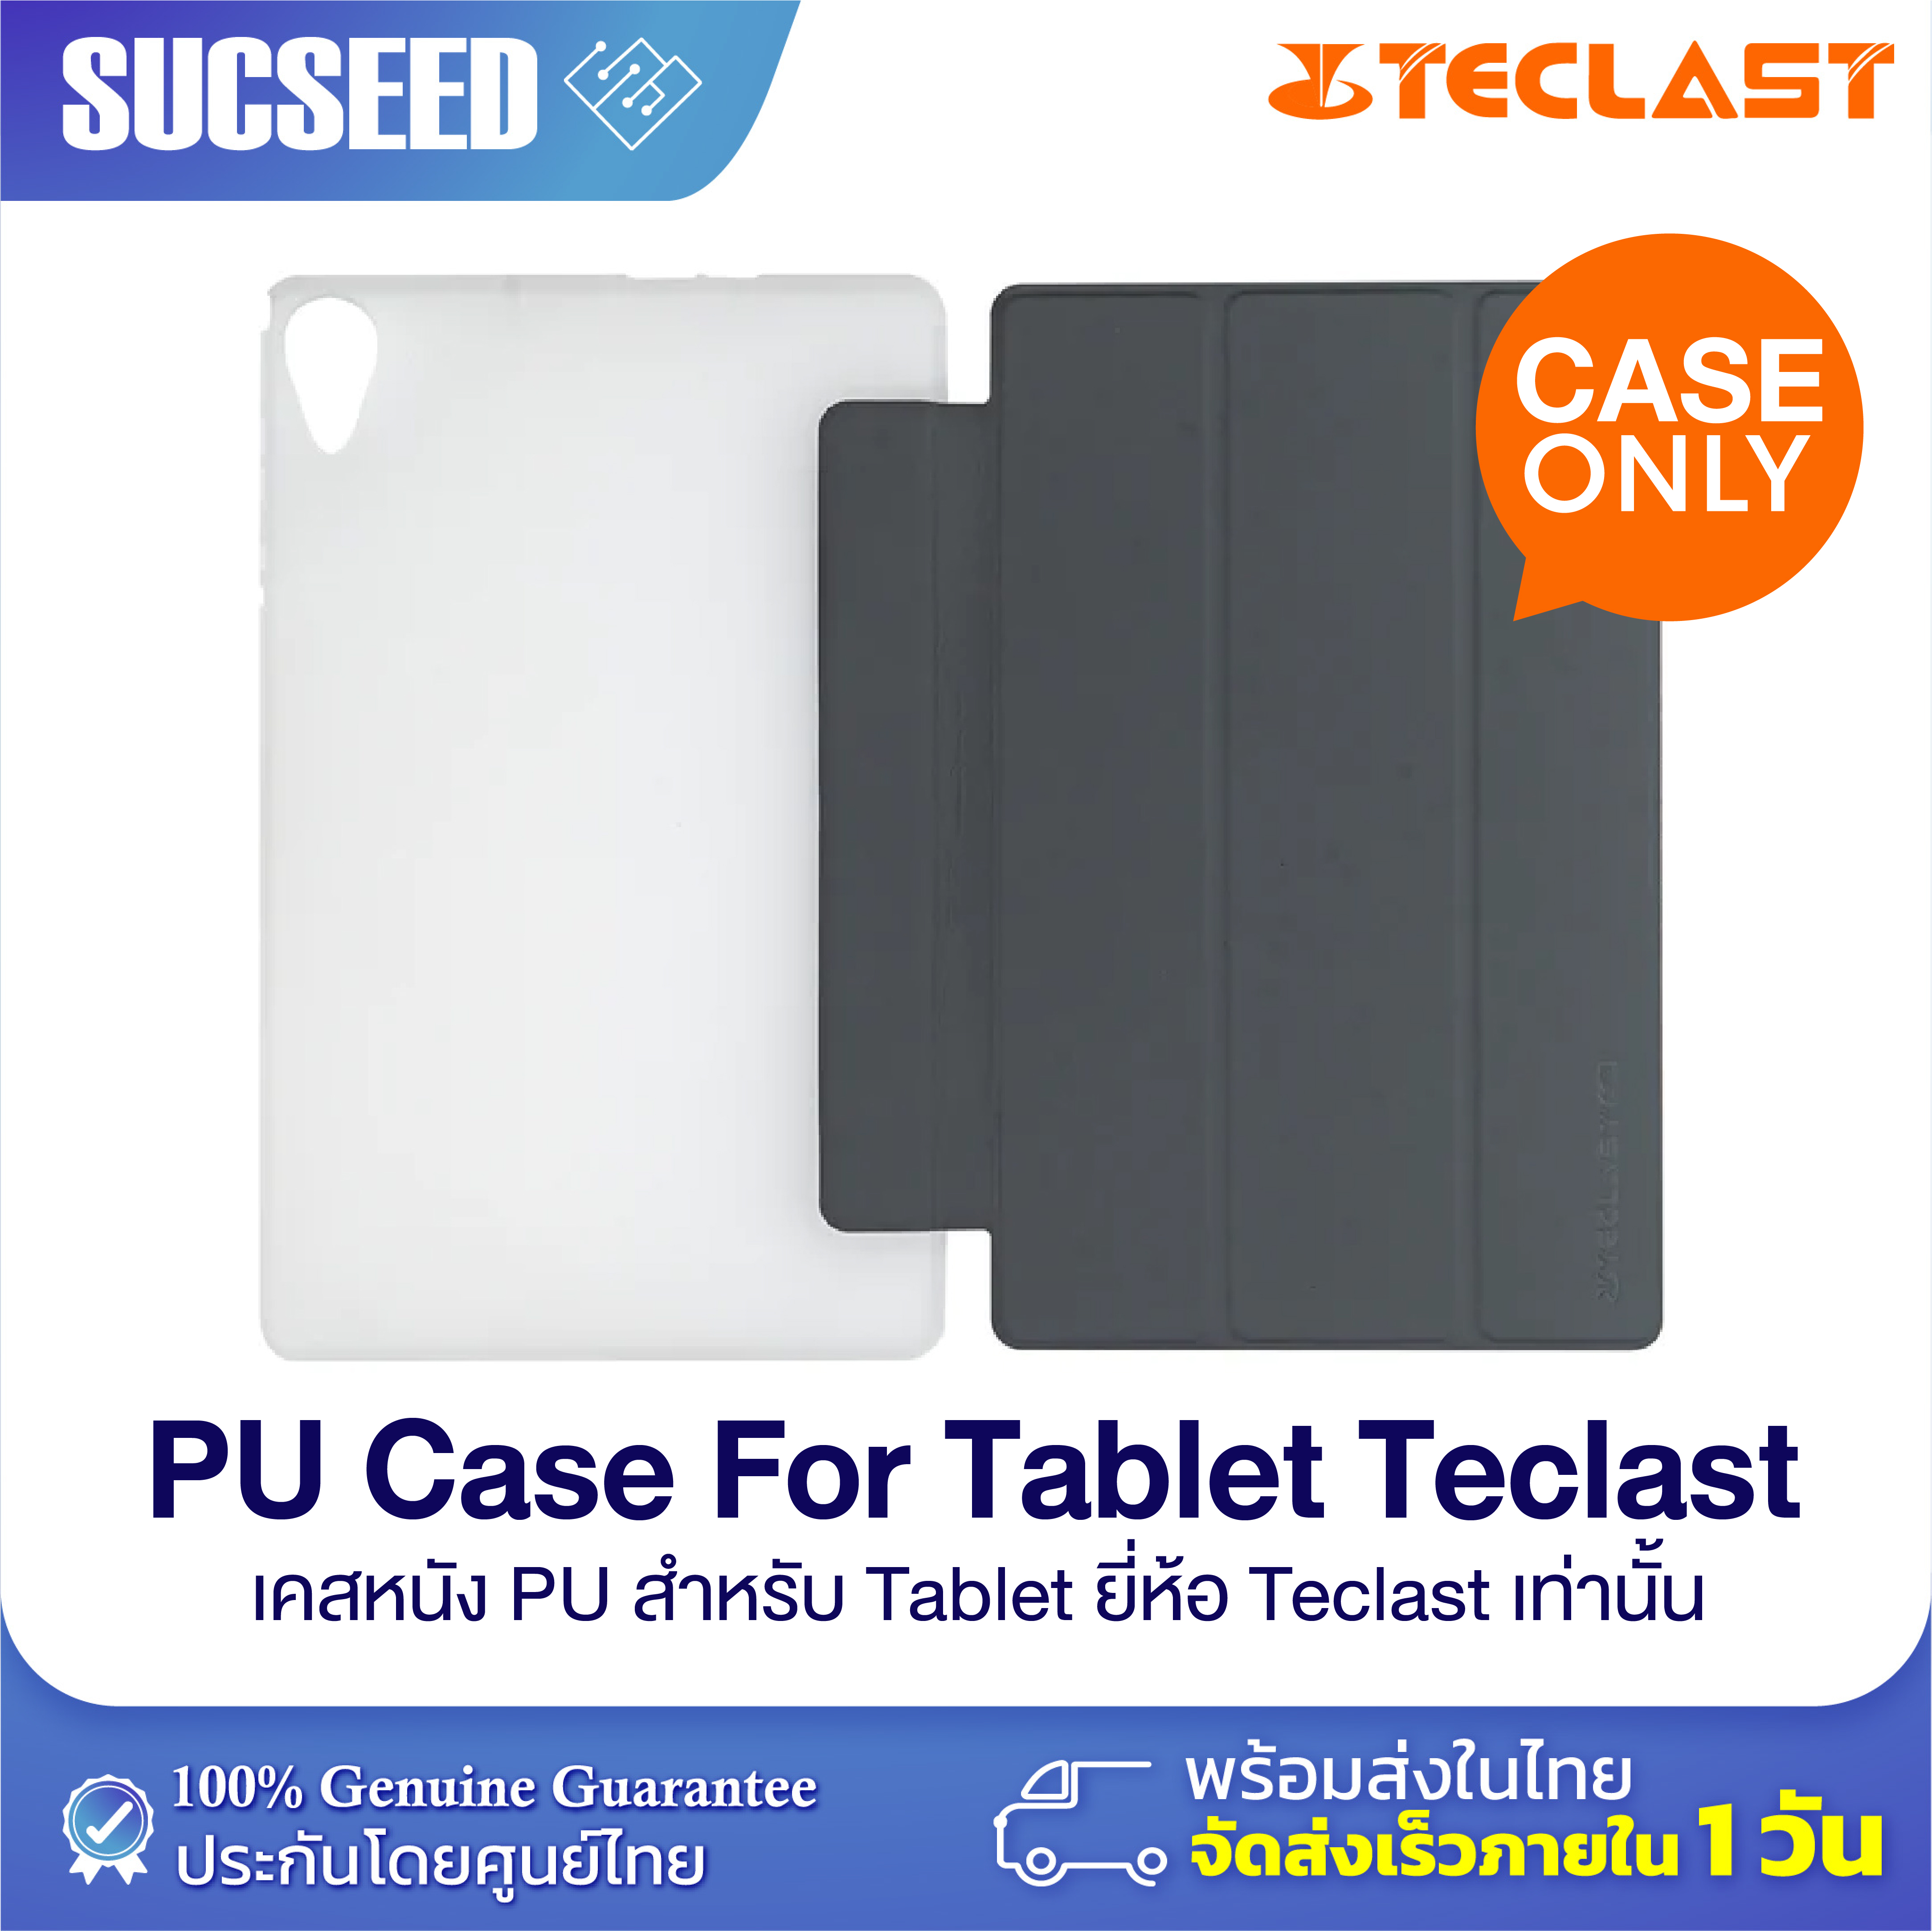 คำอธิบายเพิ่มเติมเกี่ยวกับ Case For Tablet Teclast เคสสำหรับรุ่น Teclast เท่านั้น!  สามารถพับตั้งได้ พร้อมส่งในไทย